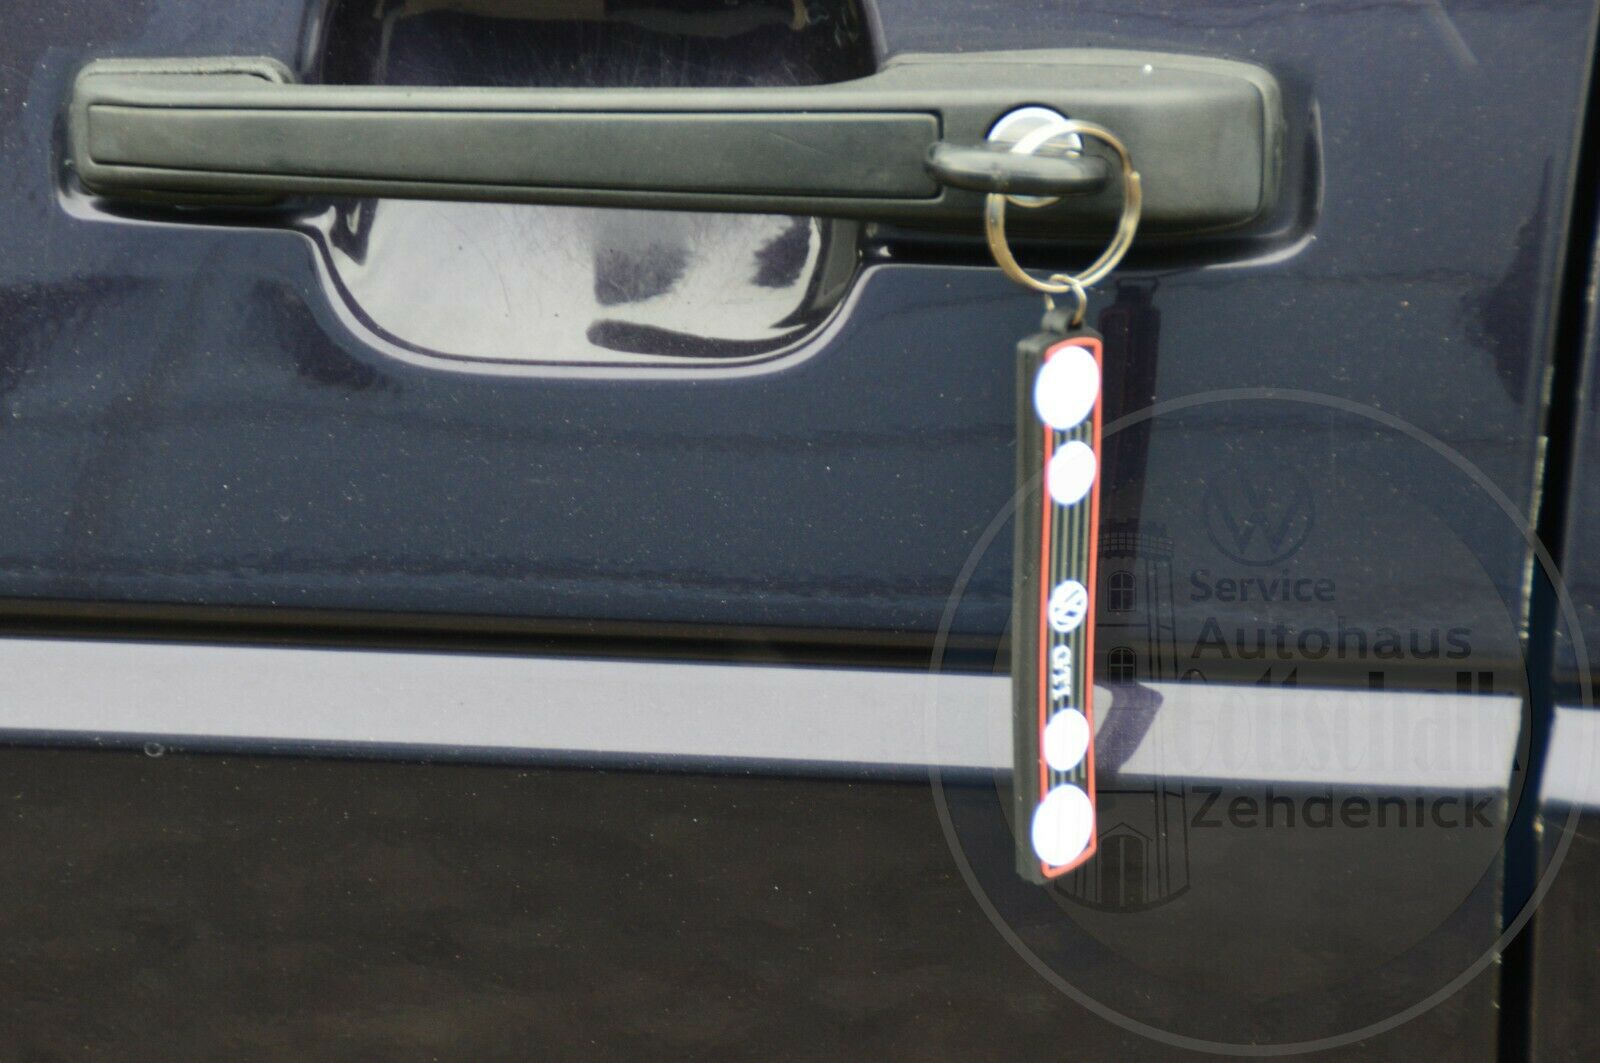 Volkswagen VW Golf 2 GTI Schlüsselanhänger Kühlergrill Doppelscheinwerfer ZCP902795